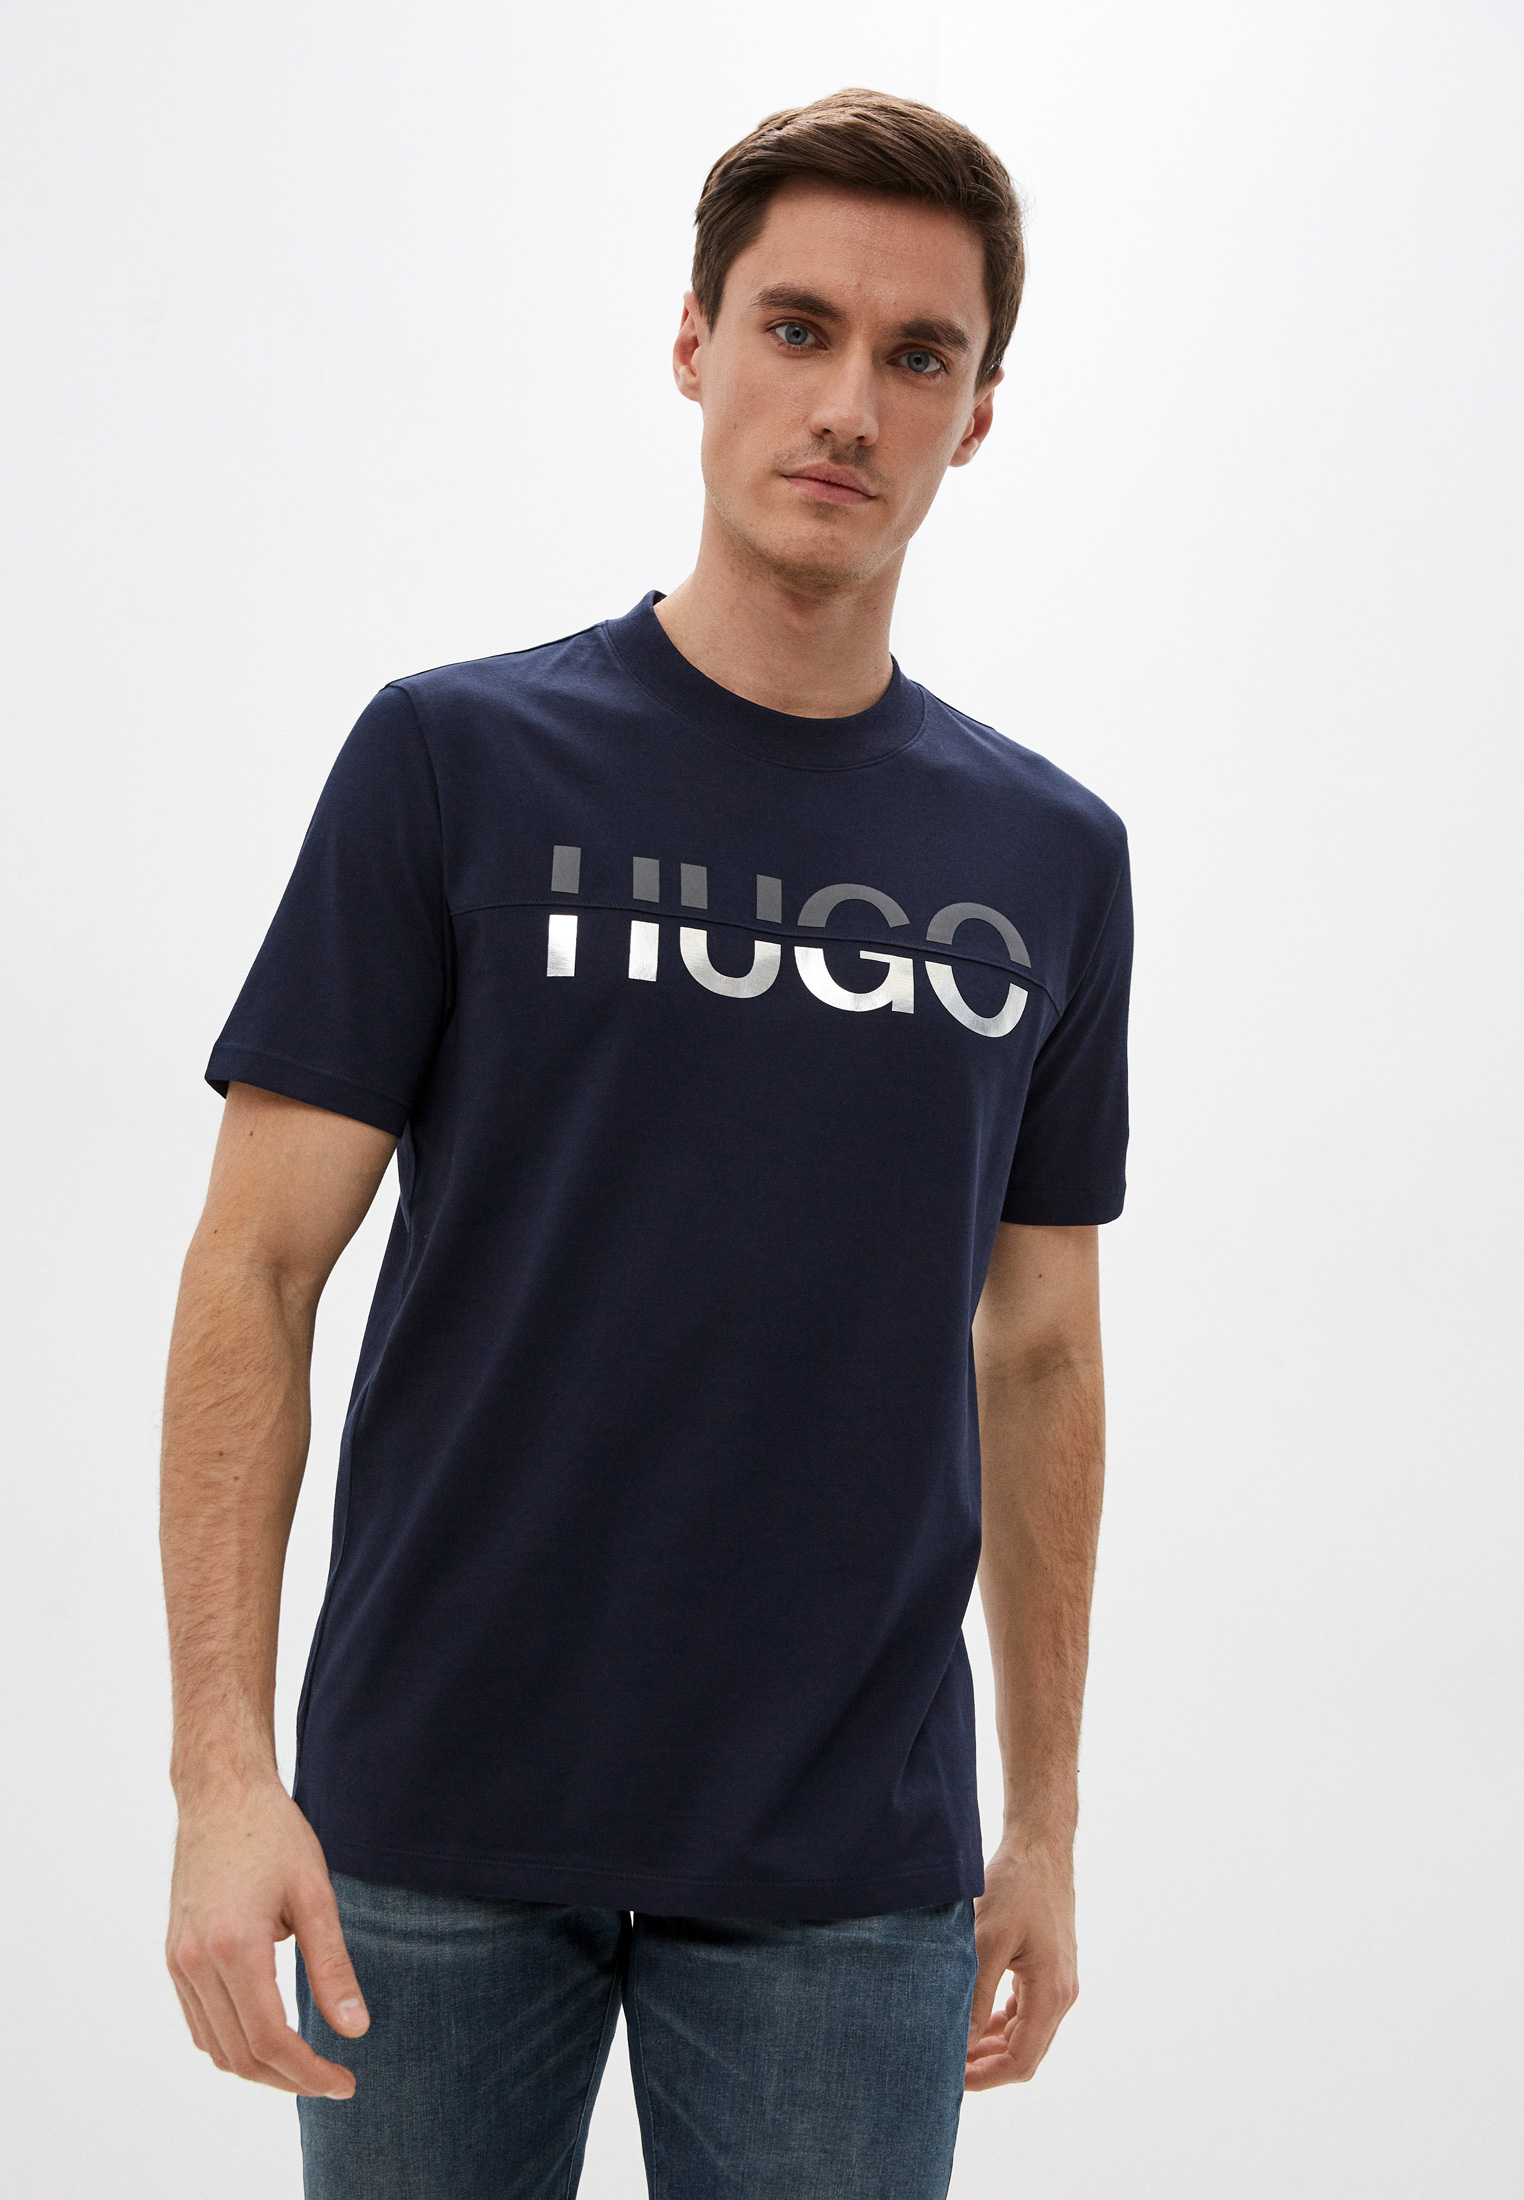 Купить футболку hugo. Футболка Hugo Boss 2022. Hugo Boss майка. Футболка Hugo Boss мужская. Майка мужская Hugo.